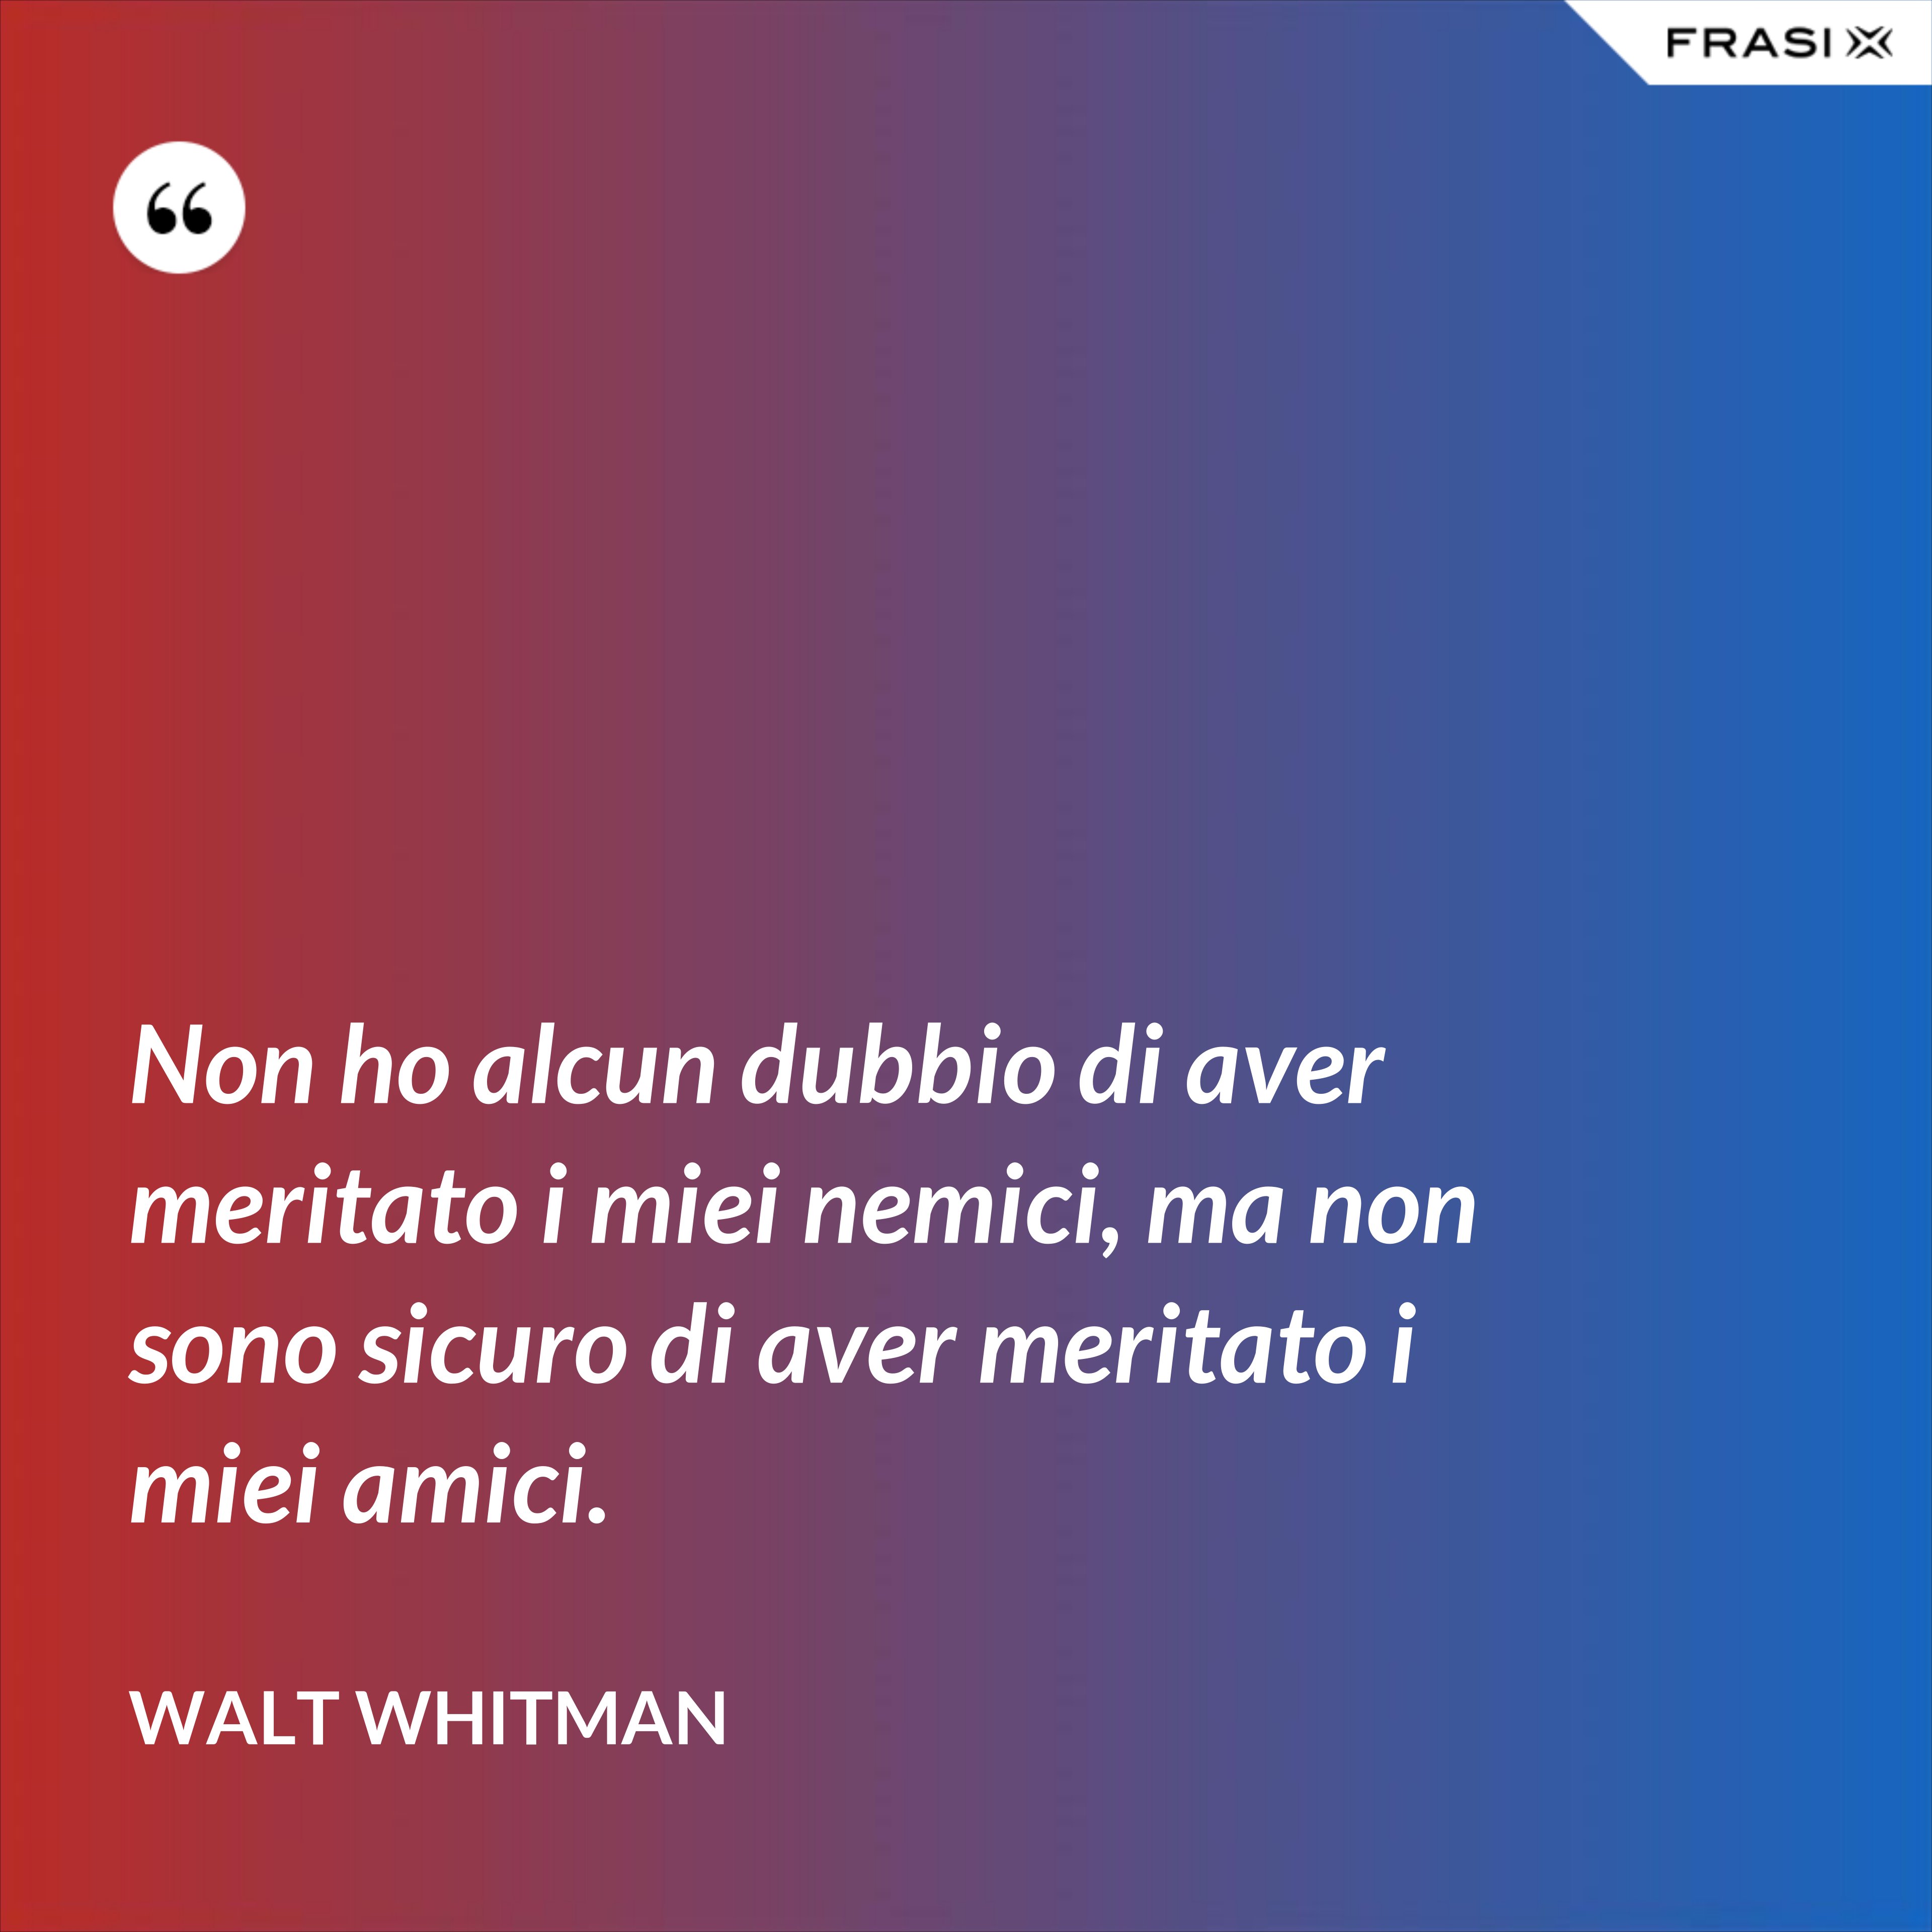 Non ho alcun dubbio di aver meritato i miei nemici, ma non sono sicuro di aver meritato i miei amici. - Walt Whitman